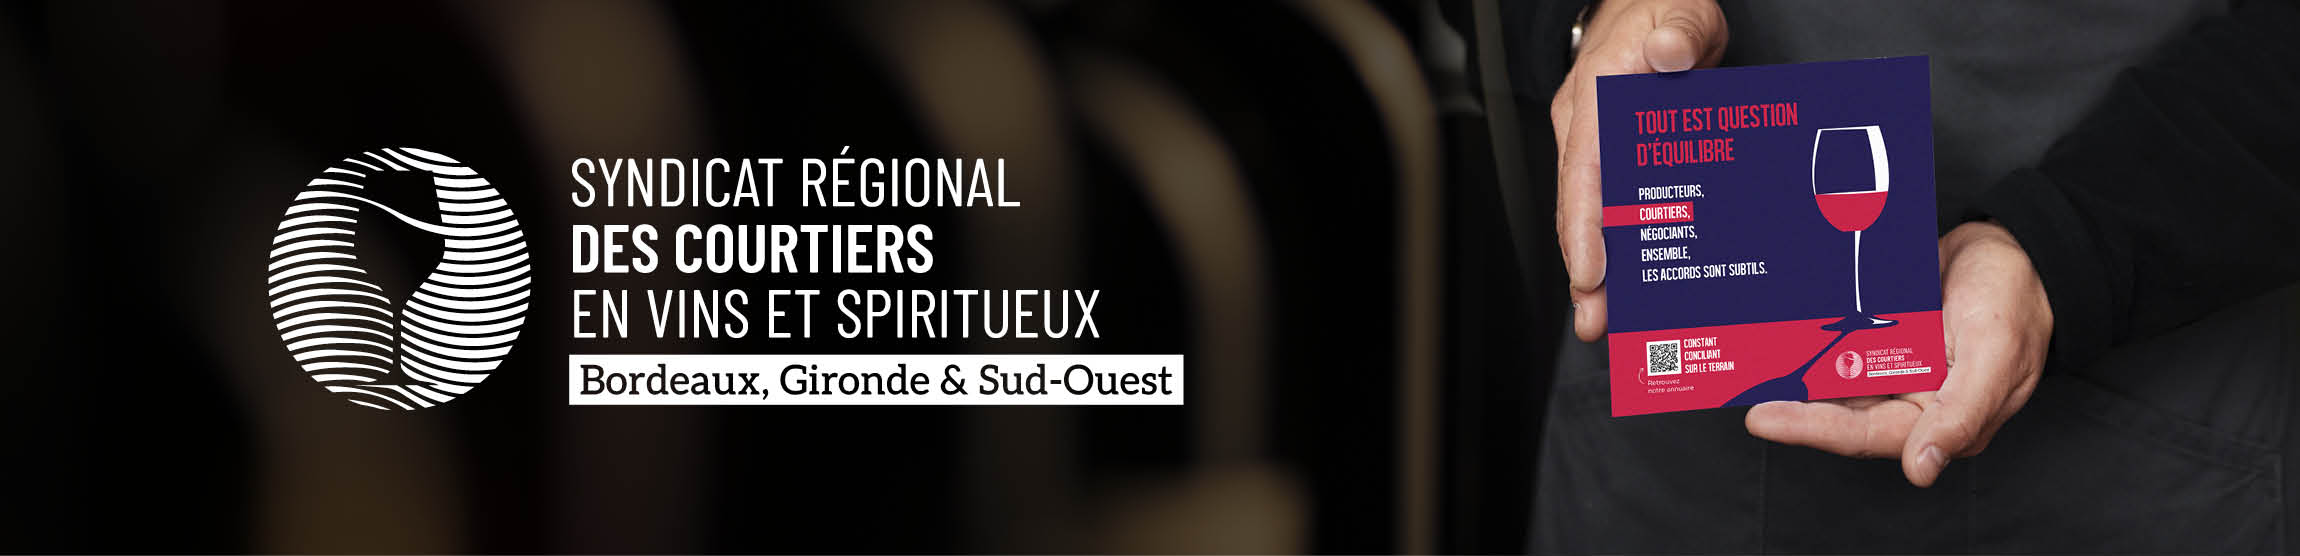 Syndicats des Courtiers en vins de Bordeaux - Header